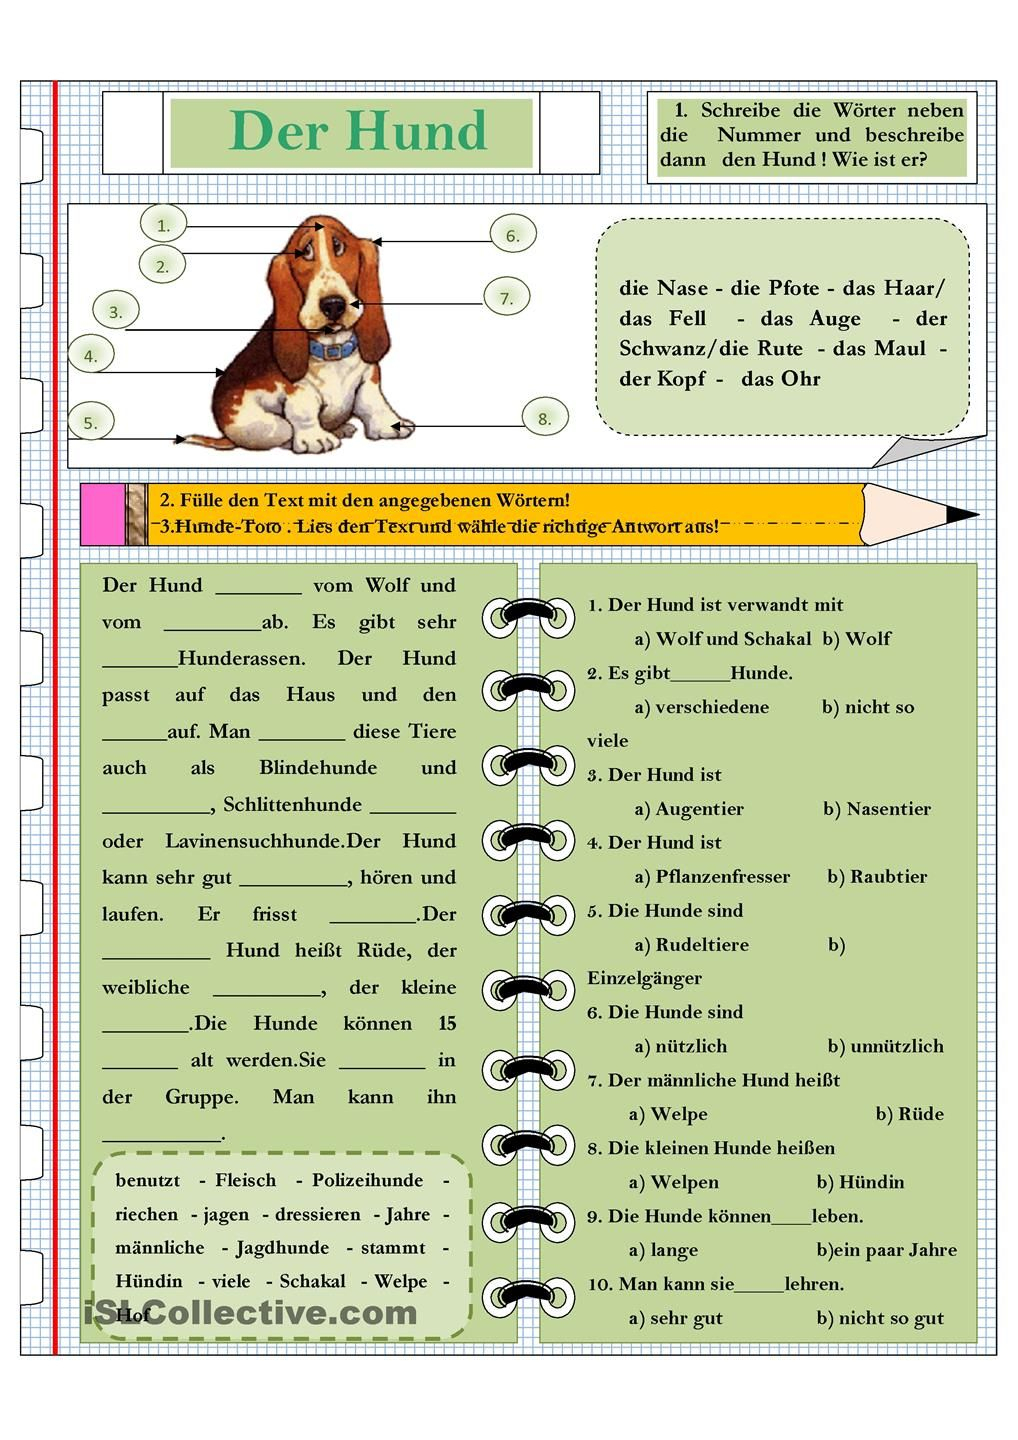 Die Tiere Der Hund | Schulhund, Hunde, Tiergestützte Pädagogik über Hunderasse Kreuzworträtsel